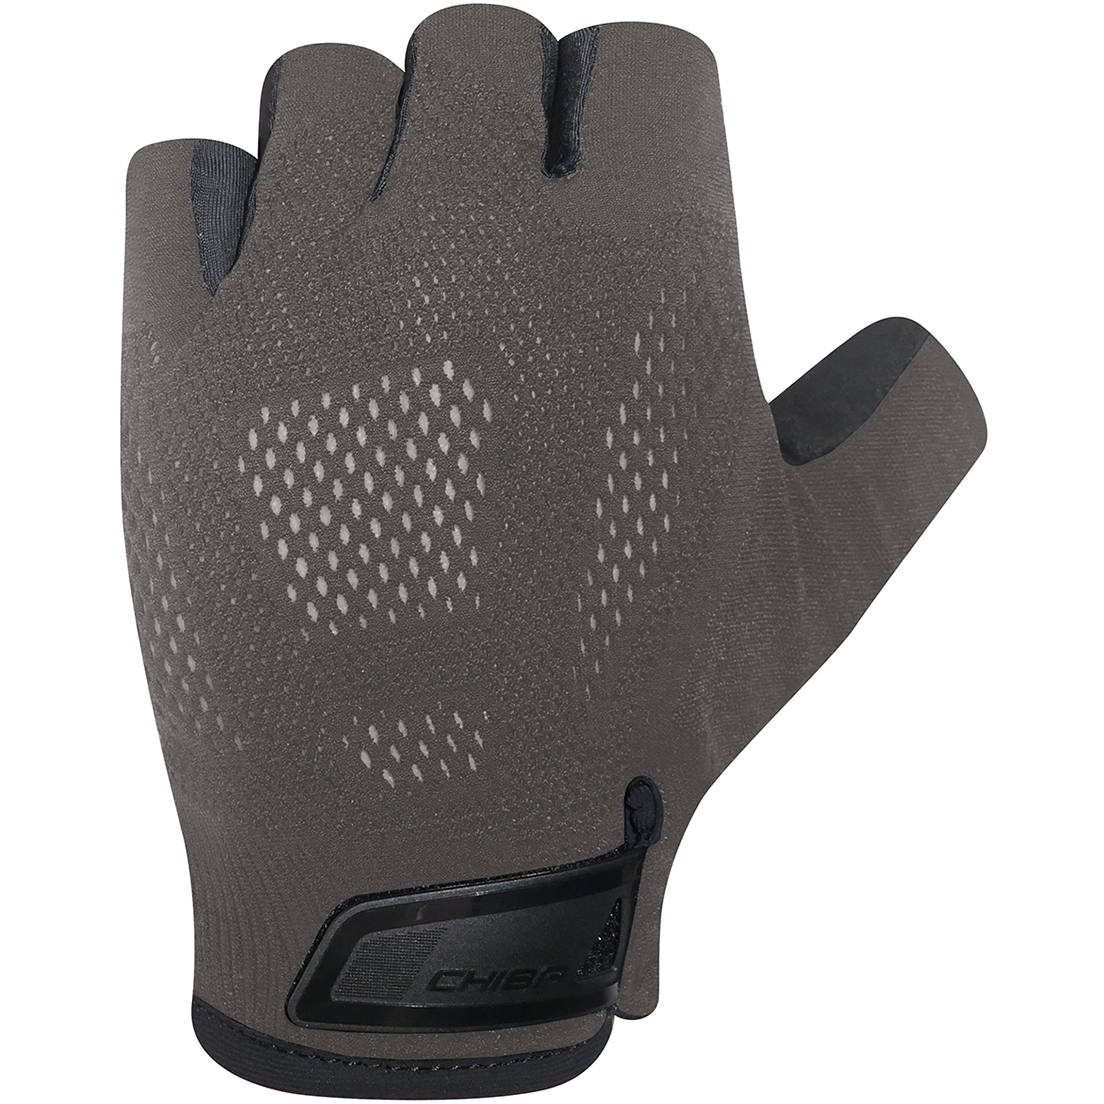 Productfoto van Chiba BioXCell Road Handschoenen met Korte Vingers - dark grey